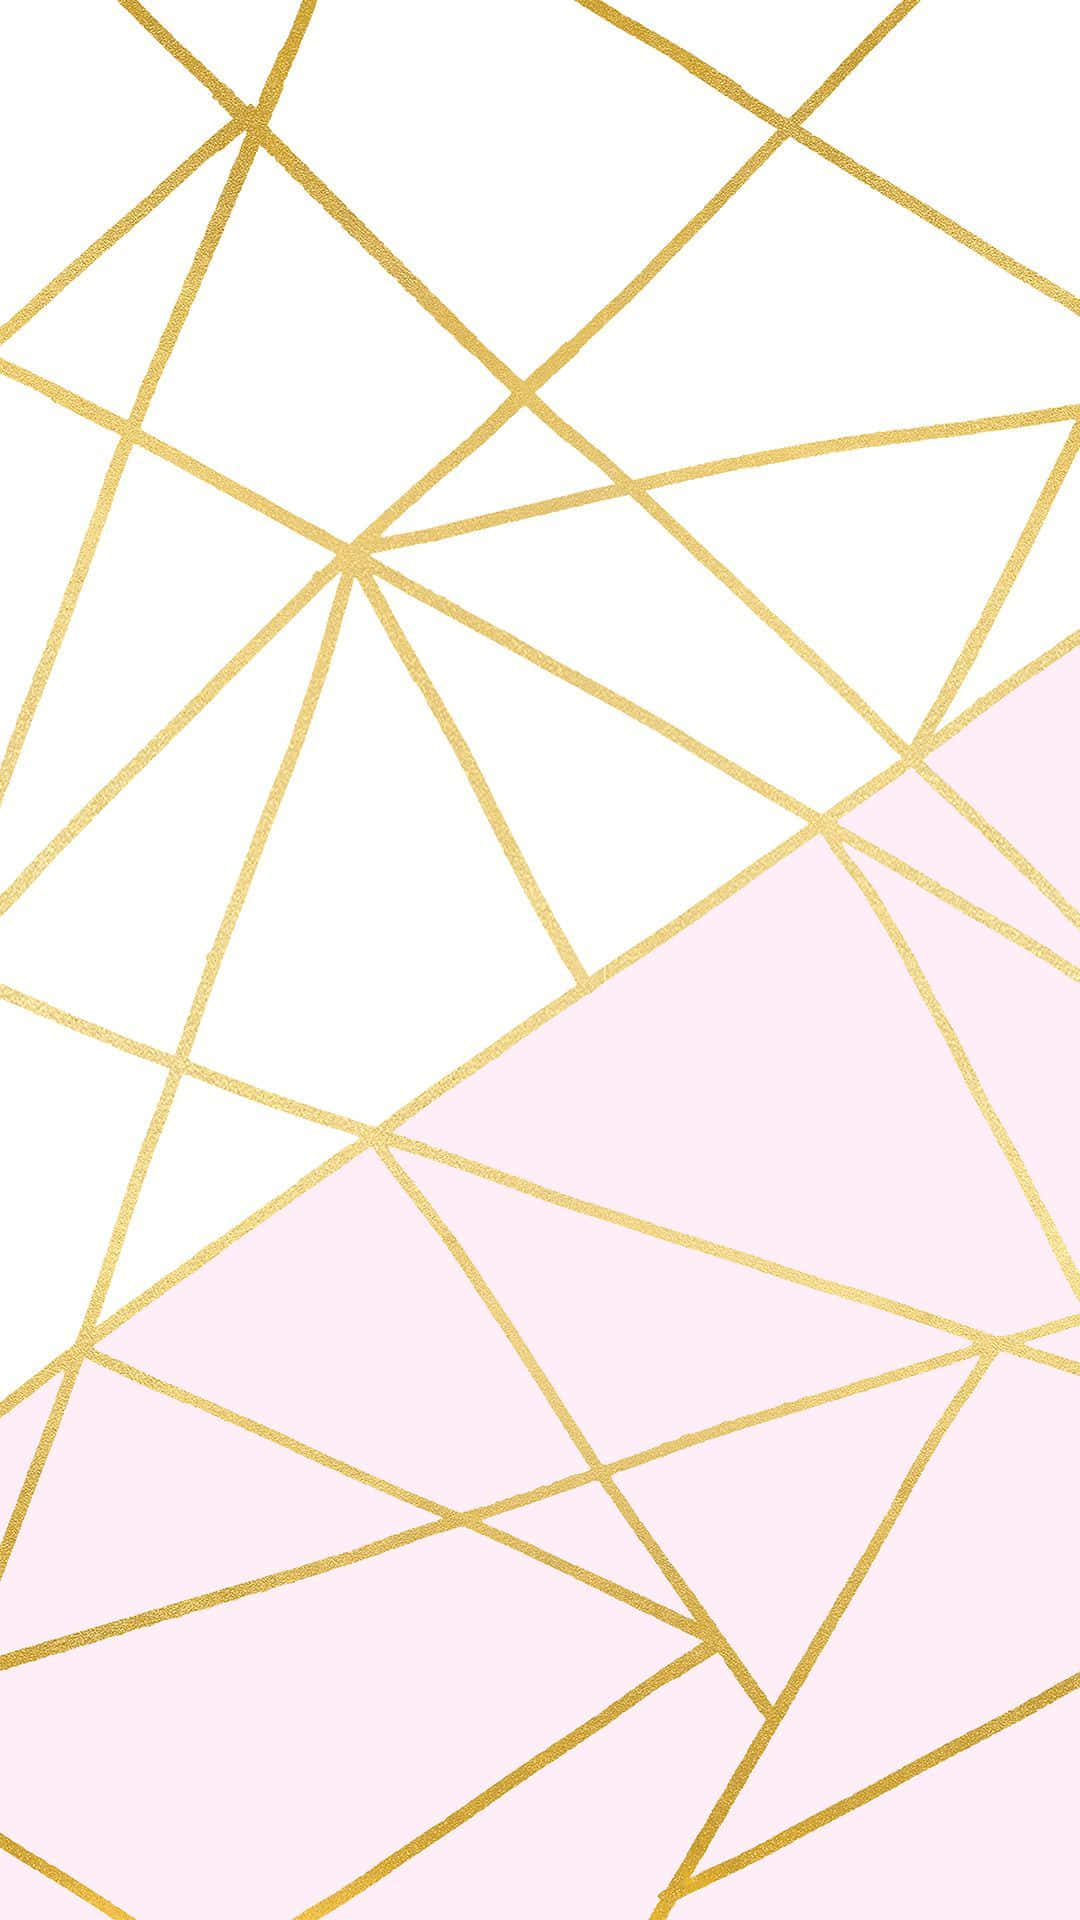 Unmotivo Geometrico Rosa E Dorato Con Linee